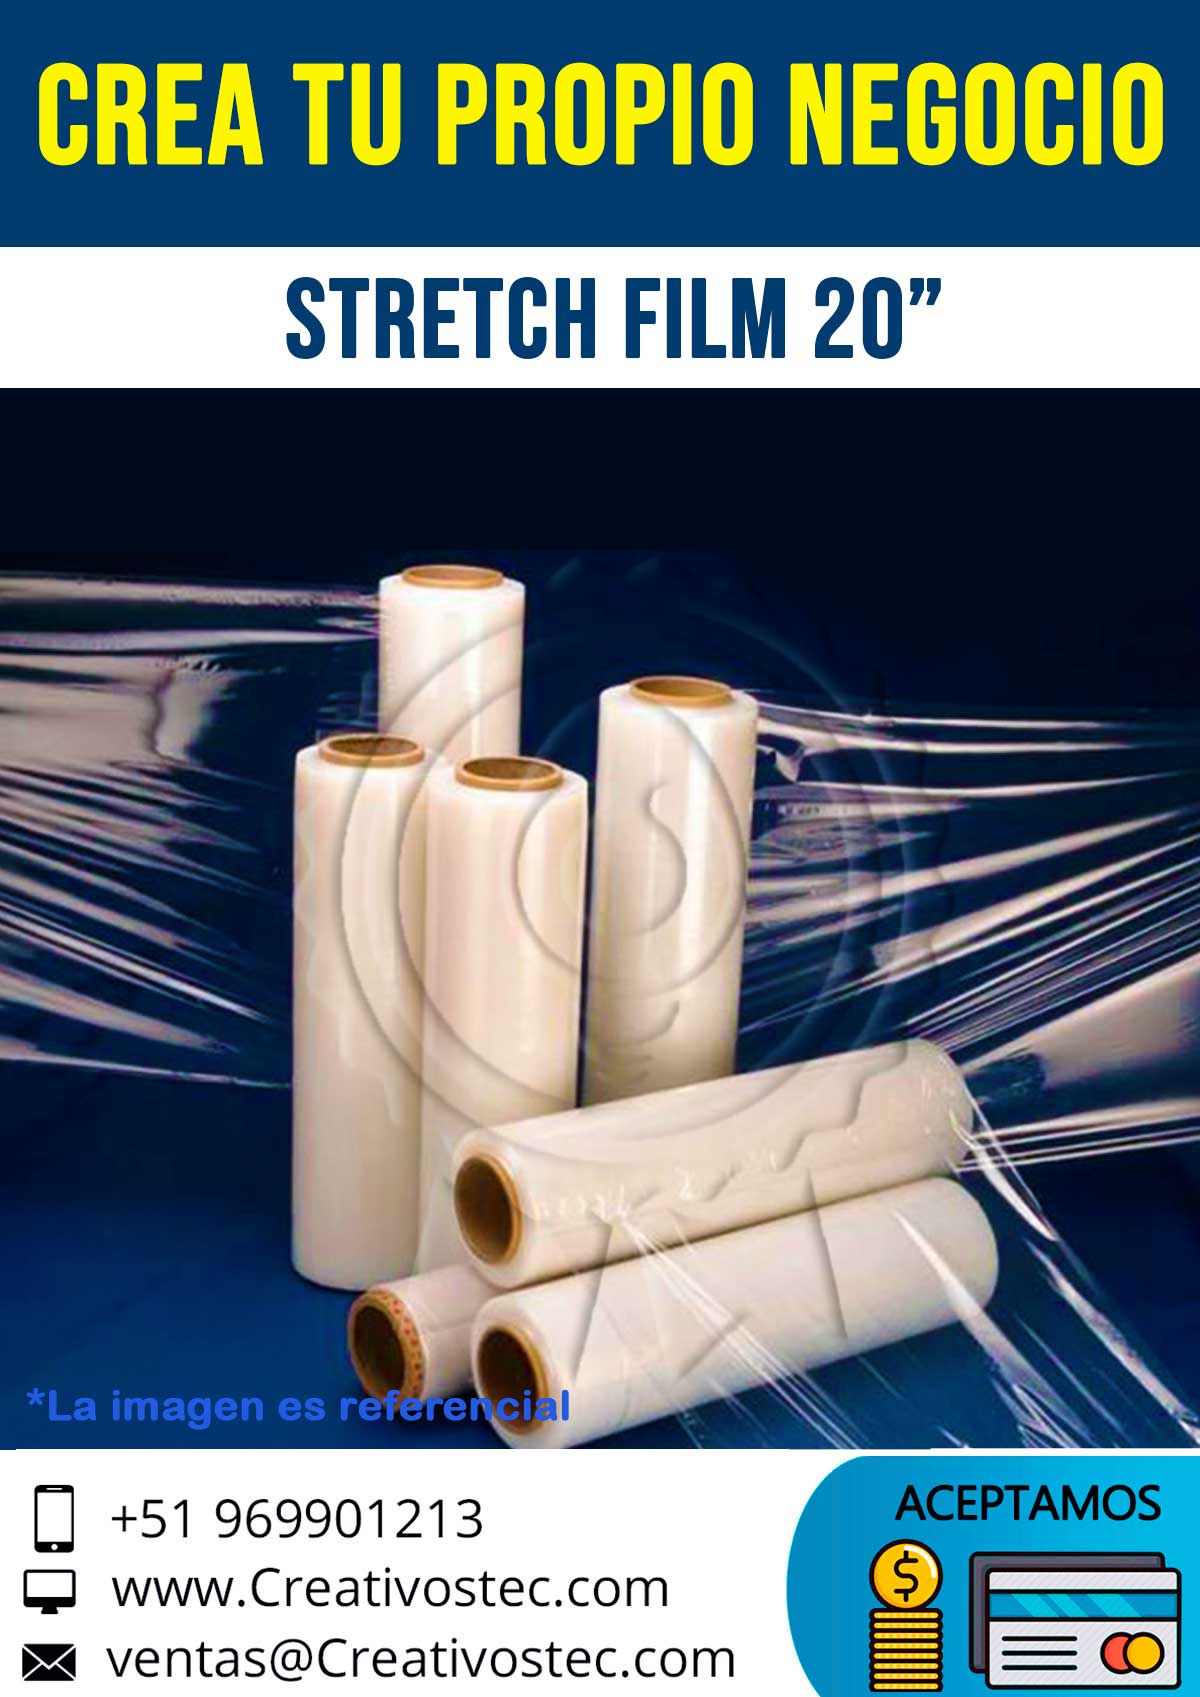 STRETCH-FILM-20-pulgadas-creativostec-promocion-mejor-calidad-venta-oferta-descuento-sublimacion-nuevo-tecnologia-impresion-digital-lima-arequipa-trujillo-chiclayo-piura-cusco-